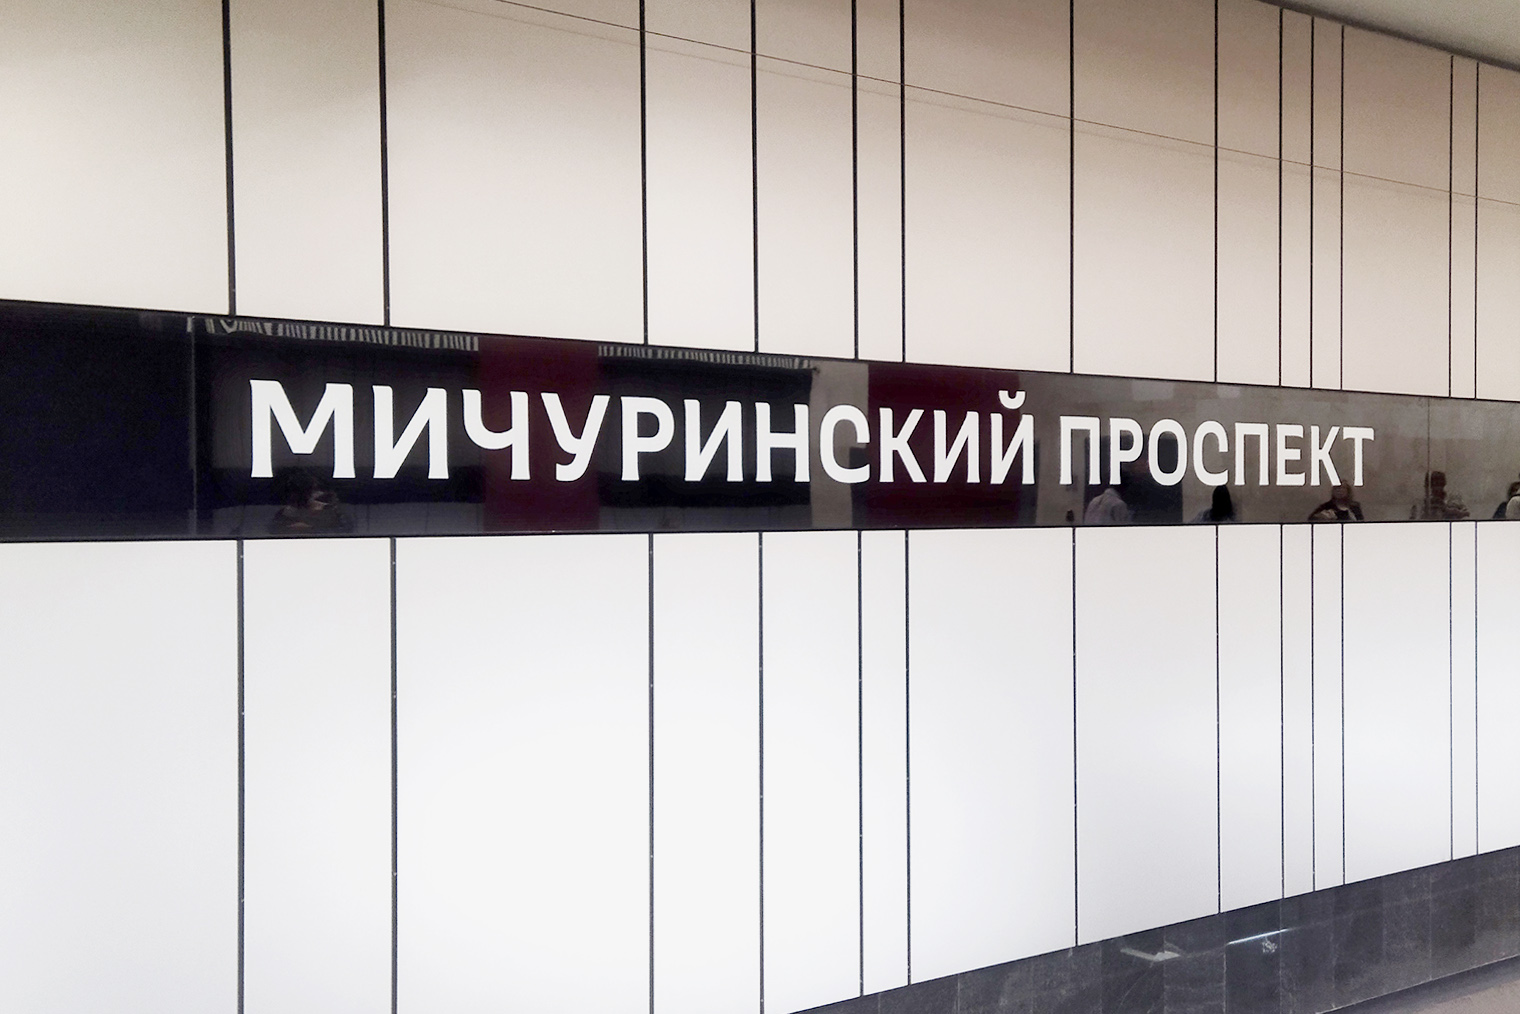 Шрифт для станции разрабатывала студия Артемия Лебедева